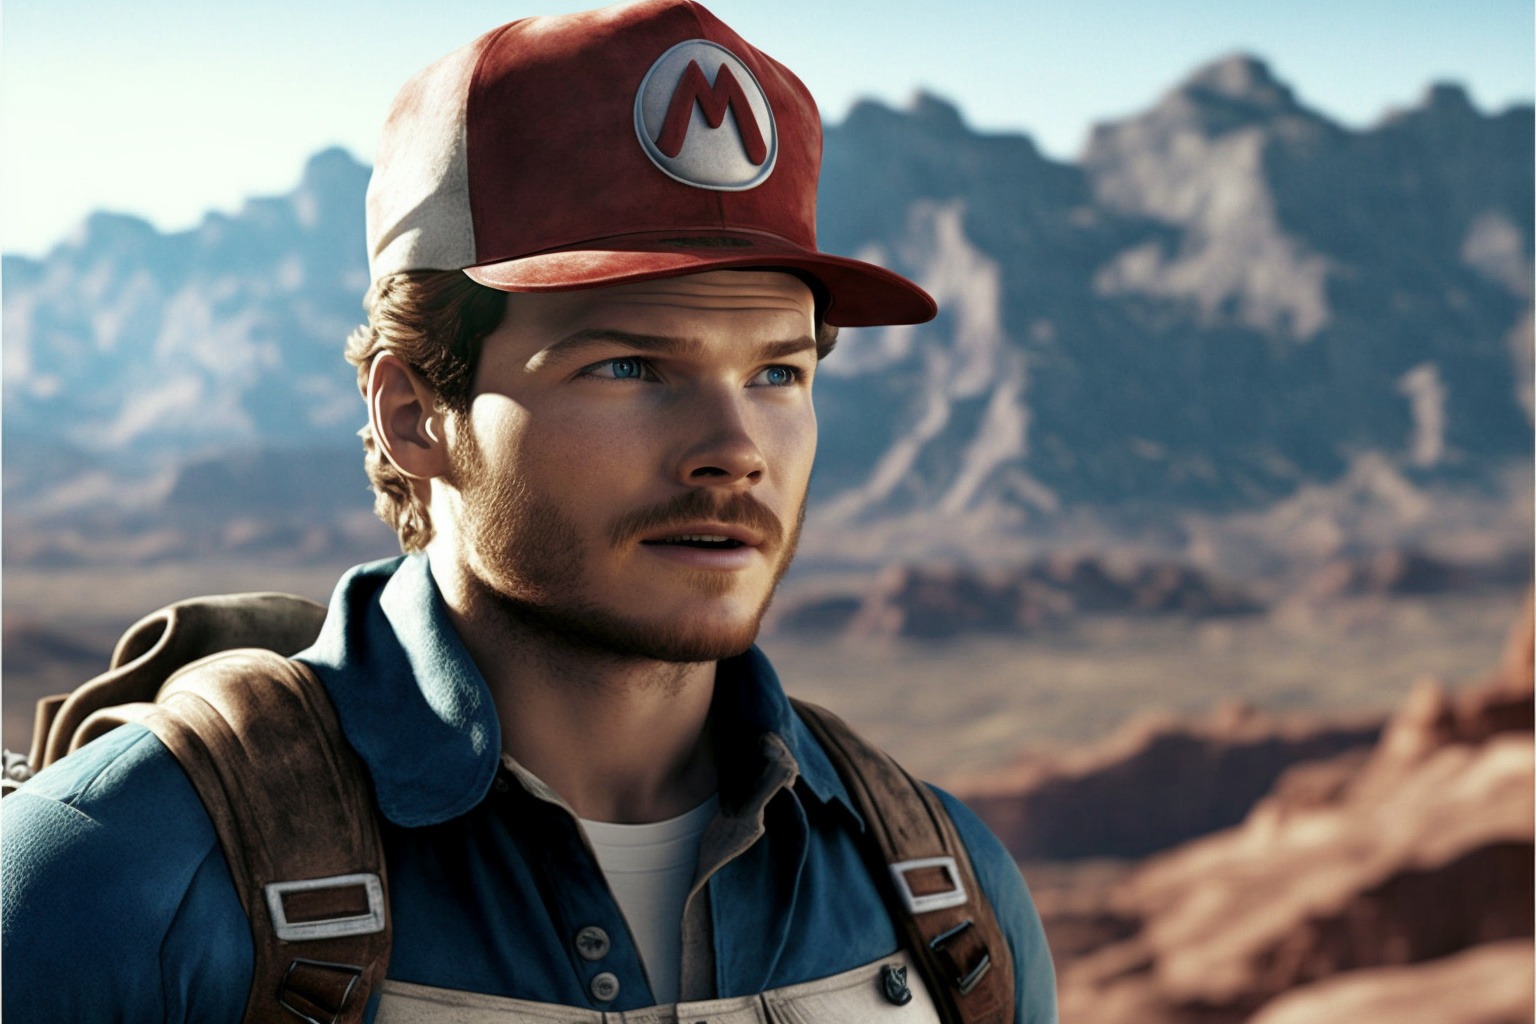 Chris Pratt as Mario